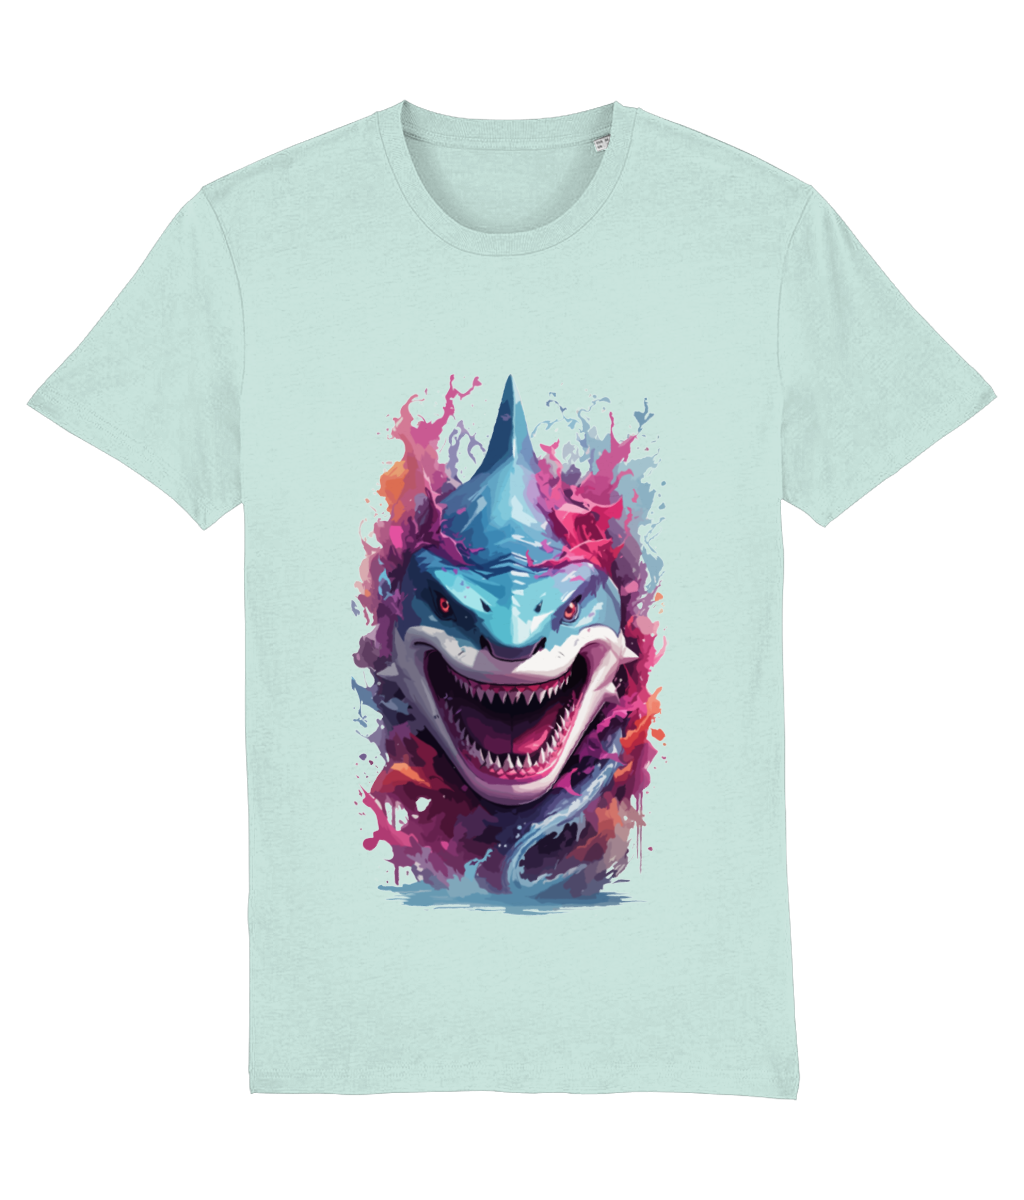 Arty Shark Print T-Shirt